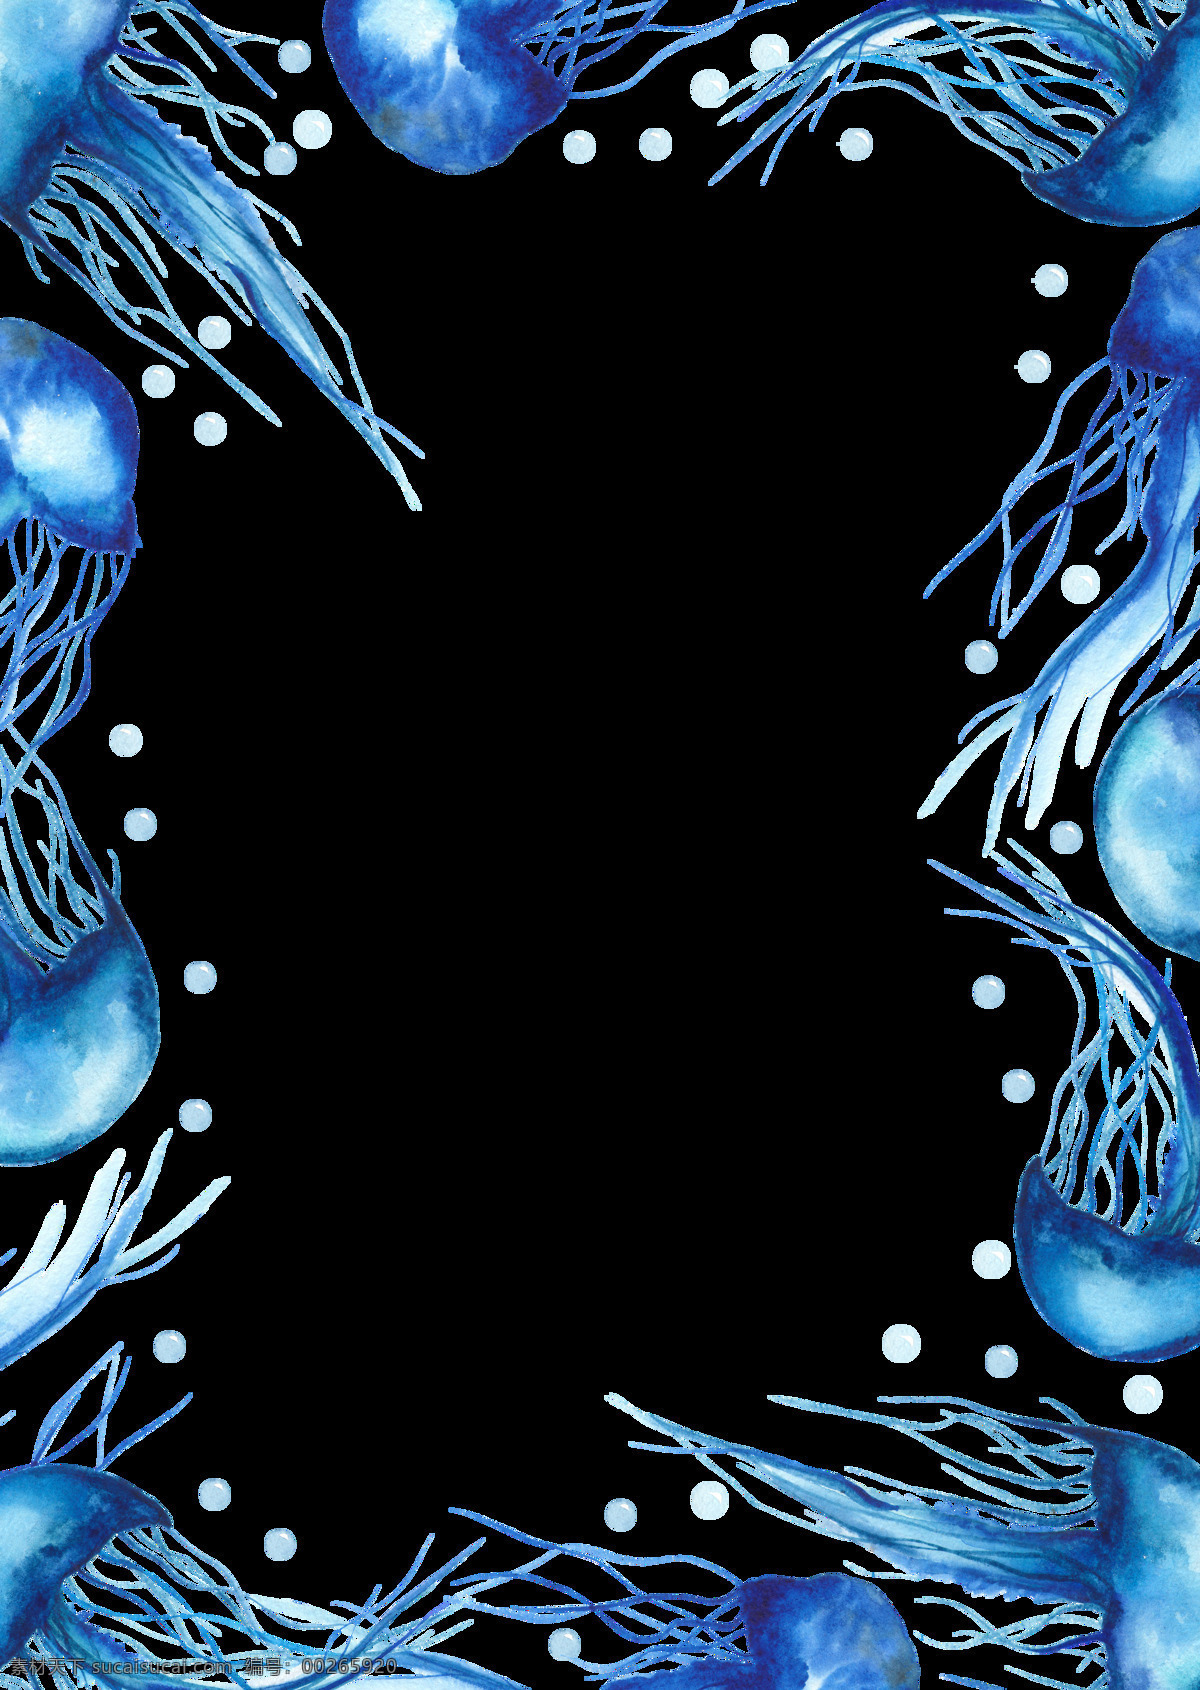 海洋 主题 装饰 图案 水母 海洋生物 鲸鱼 淡蓝色水彩画 水彩元素 手绘涂鸦 海洋元素 海洋主题装饰